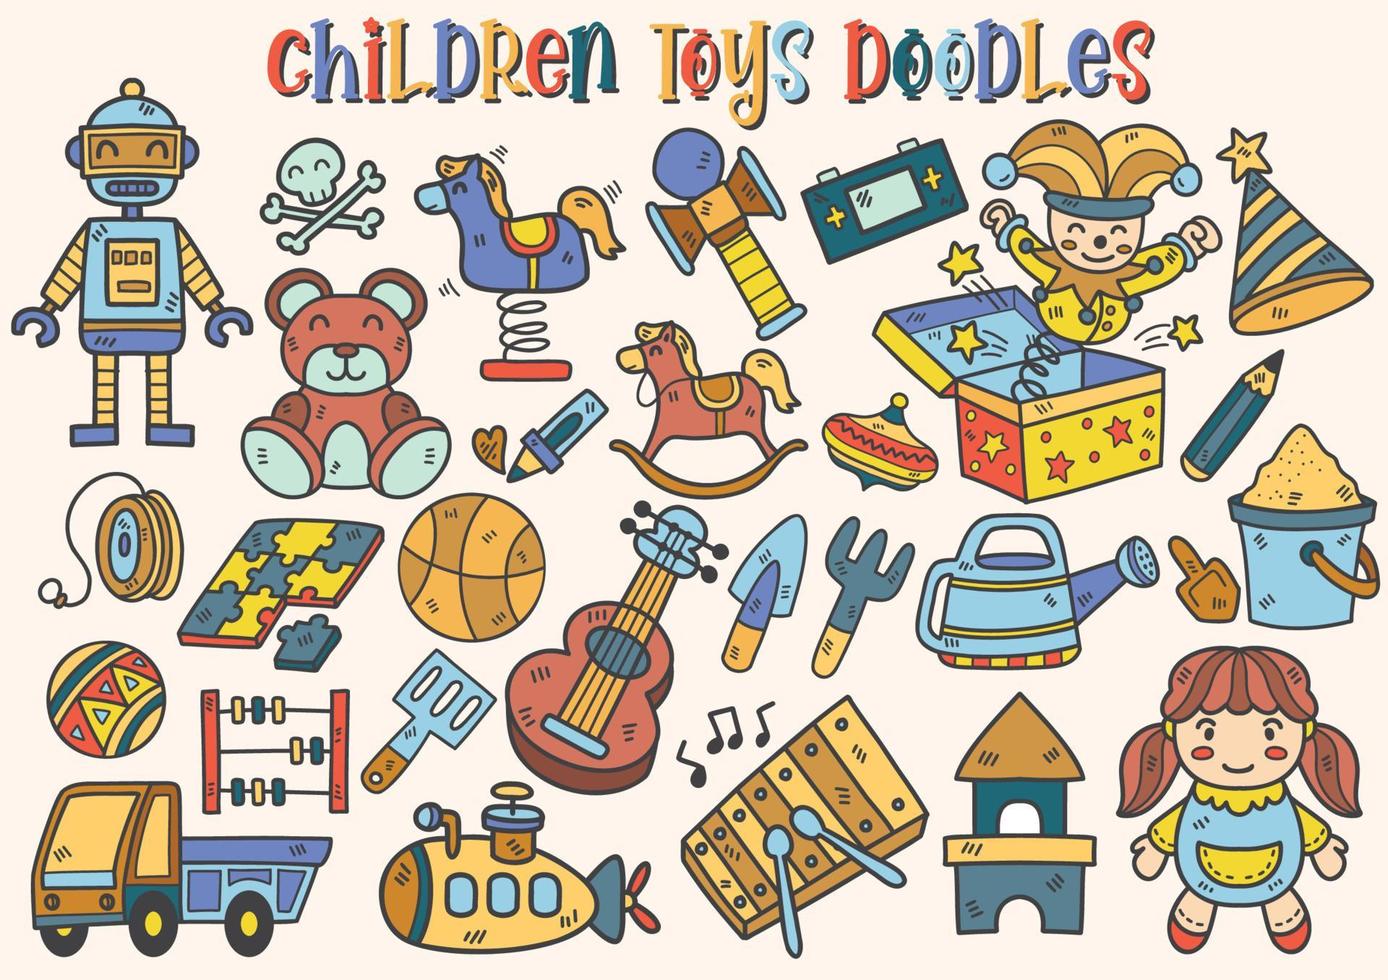 vecteur d'illustration de jouets pour enfants pour bannière